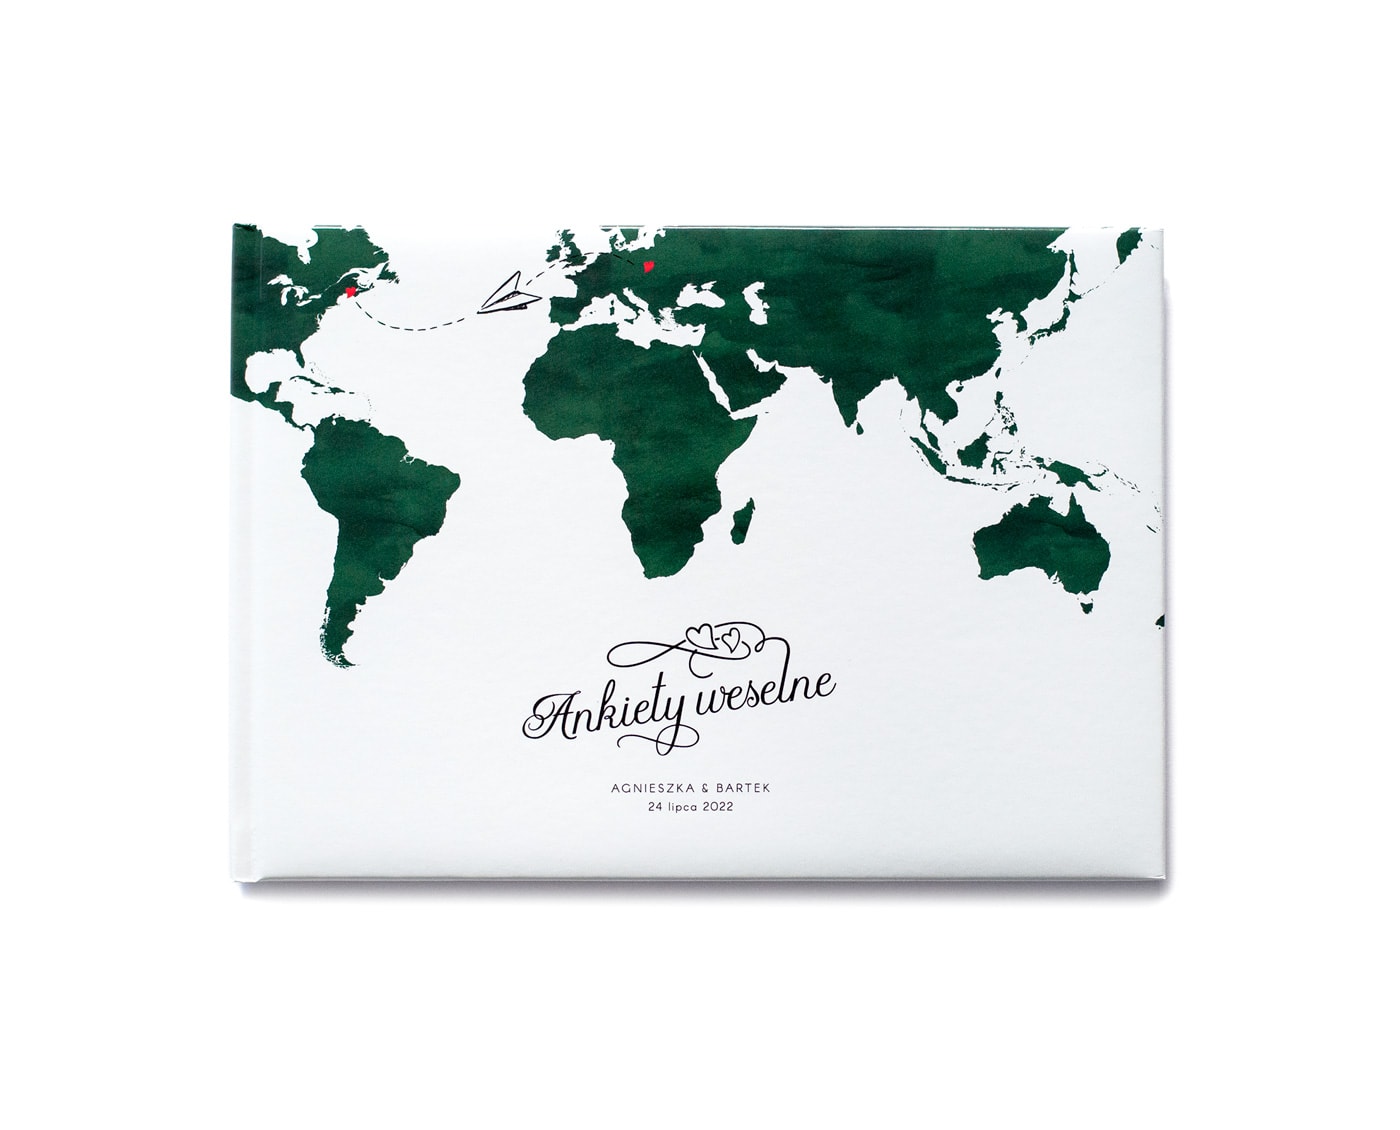 Ankieta weselna w stylu podróżniczym mapa świata